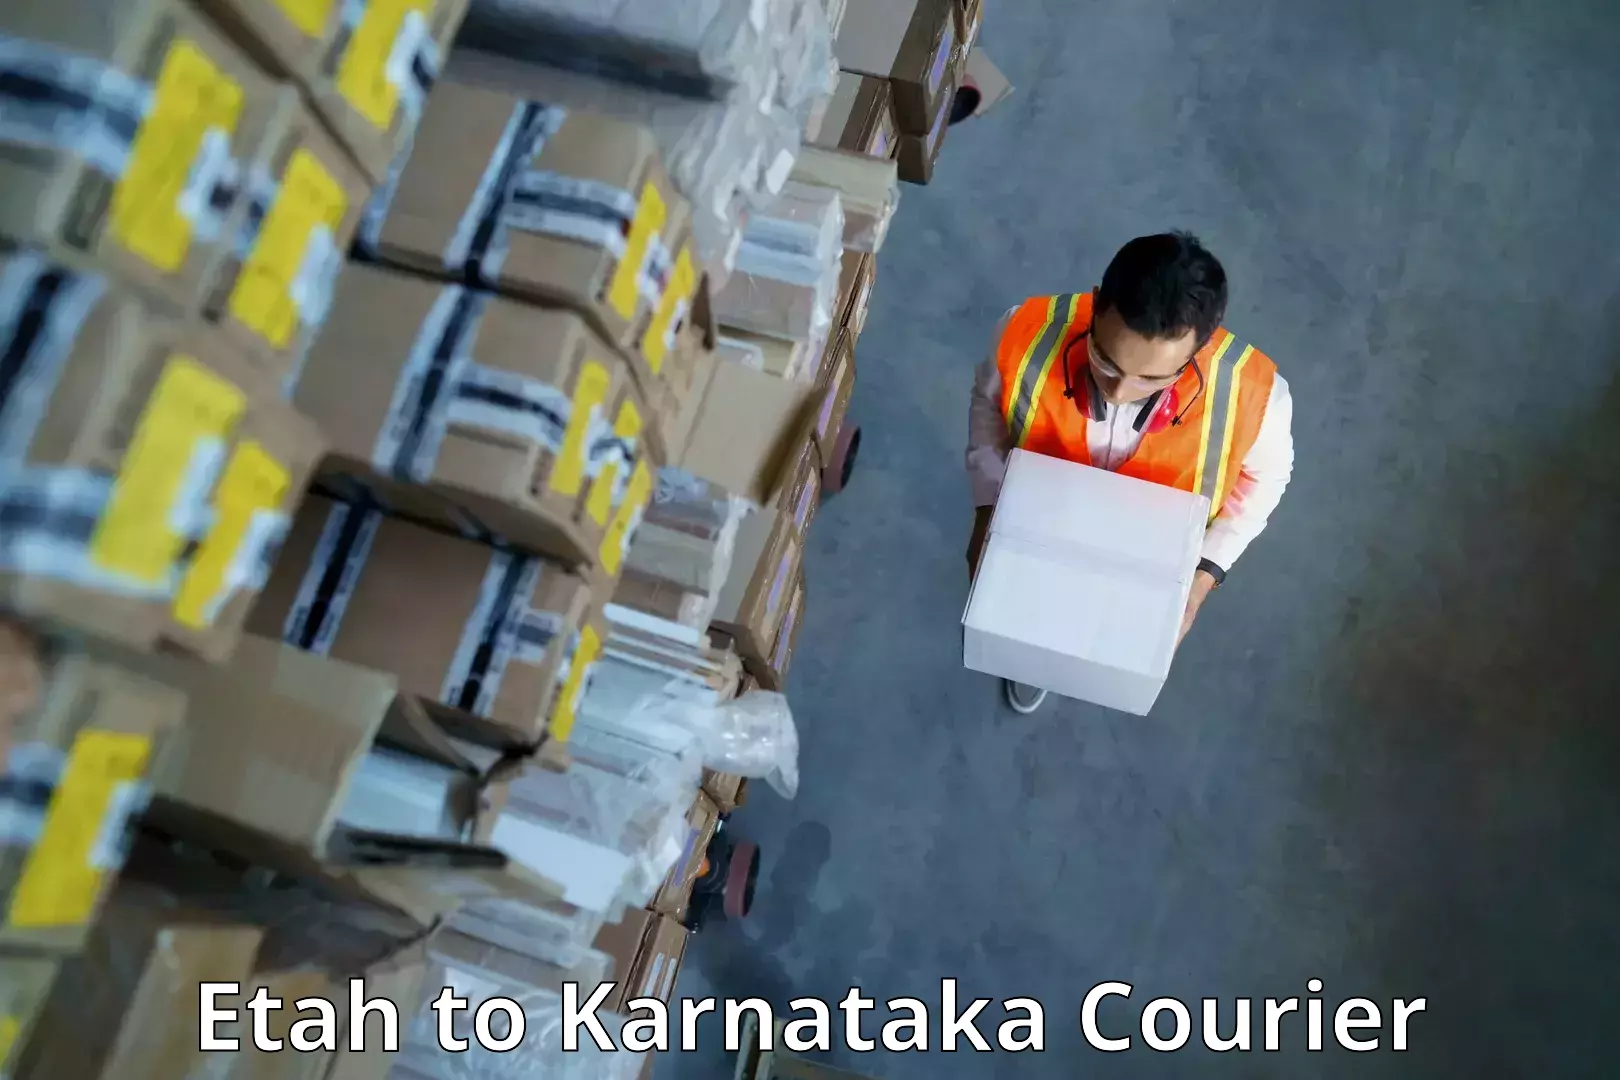 Nationwide delivery network Etah to Karnataka